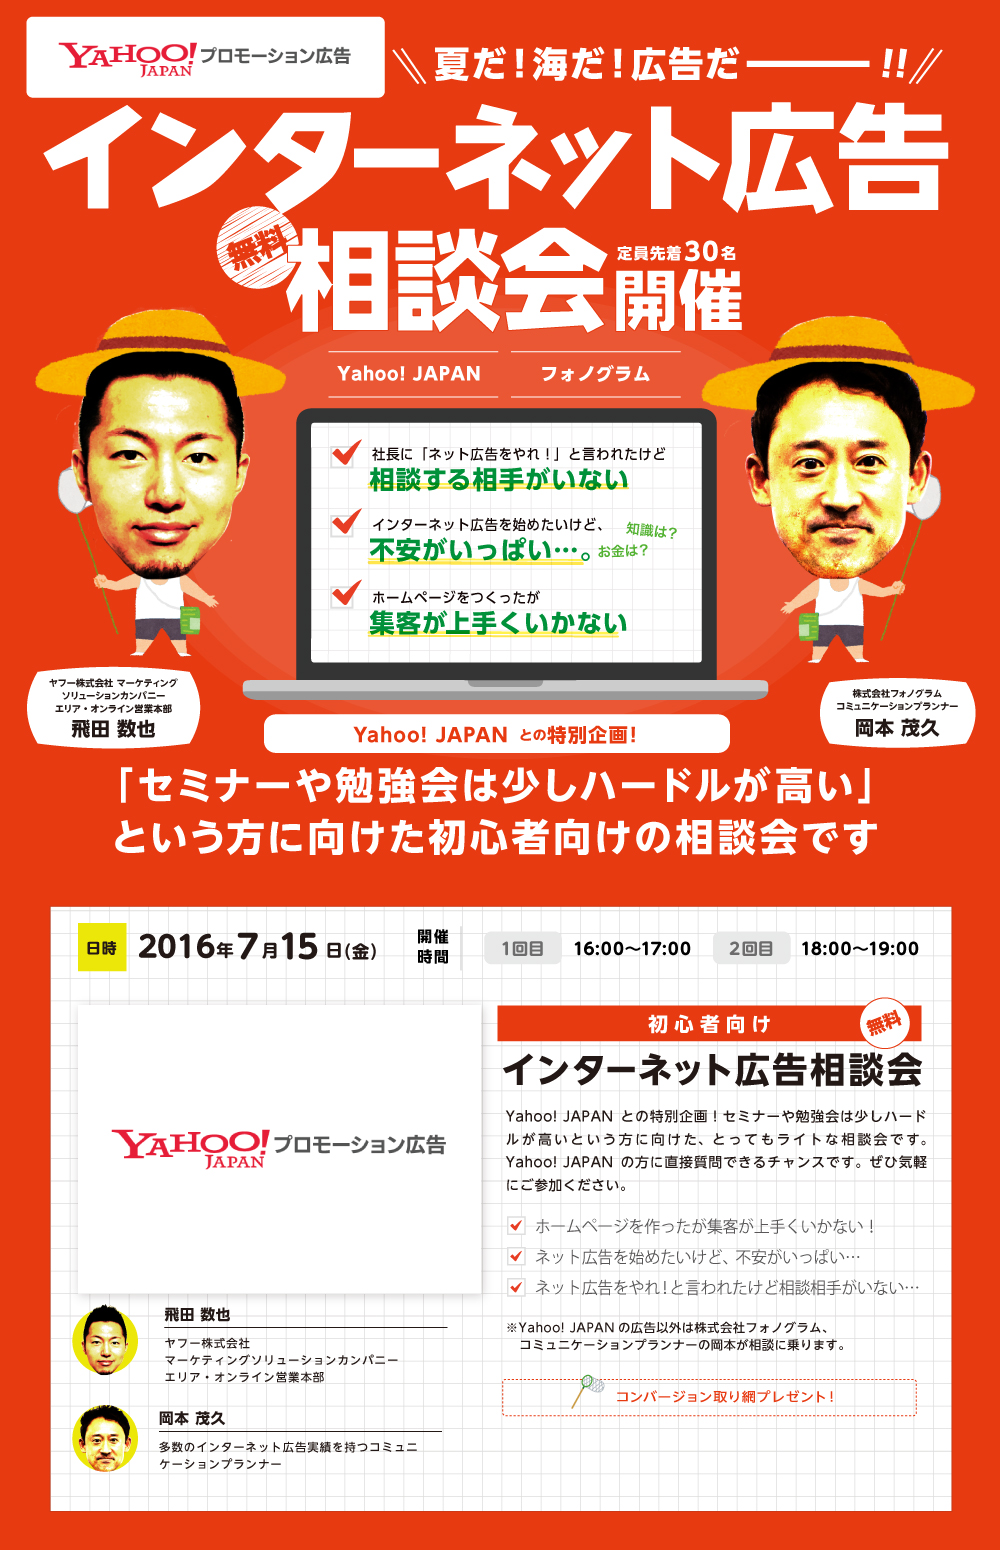 インターネット広告相談会。「セミナーや勉強会は少しハードルが高い」という方に向けた初心者向けの相談会です。Yahoo! JAPANとの特別企画！セミナーや勉強会は少しハードルが高いという方に向けた、とってもライトな相談会です。Yahoo! JAPANの方に直接質問できるチャンスです。ぜひ気軽にご参加ください。多数のインターネット広告実績を持つコミュニケーションプランナー　岡本 茂久　ヤフー株式会社マーケティングソリューションカンパニーエリア・オンライン営業本部　飛田 数也